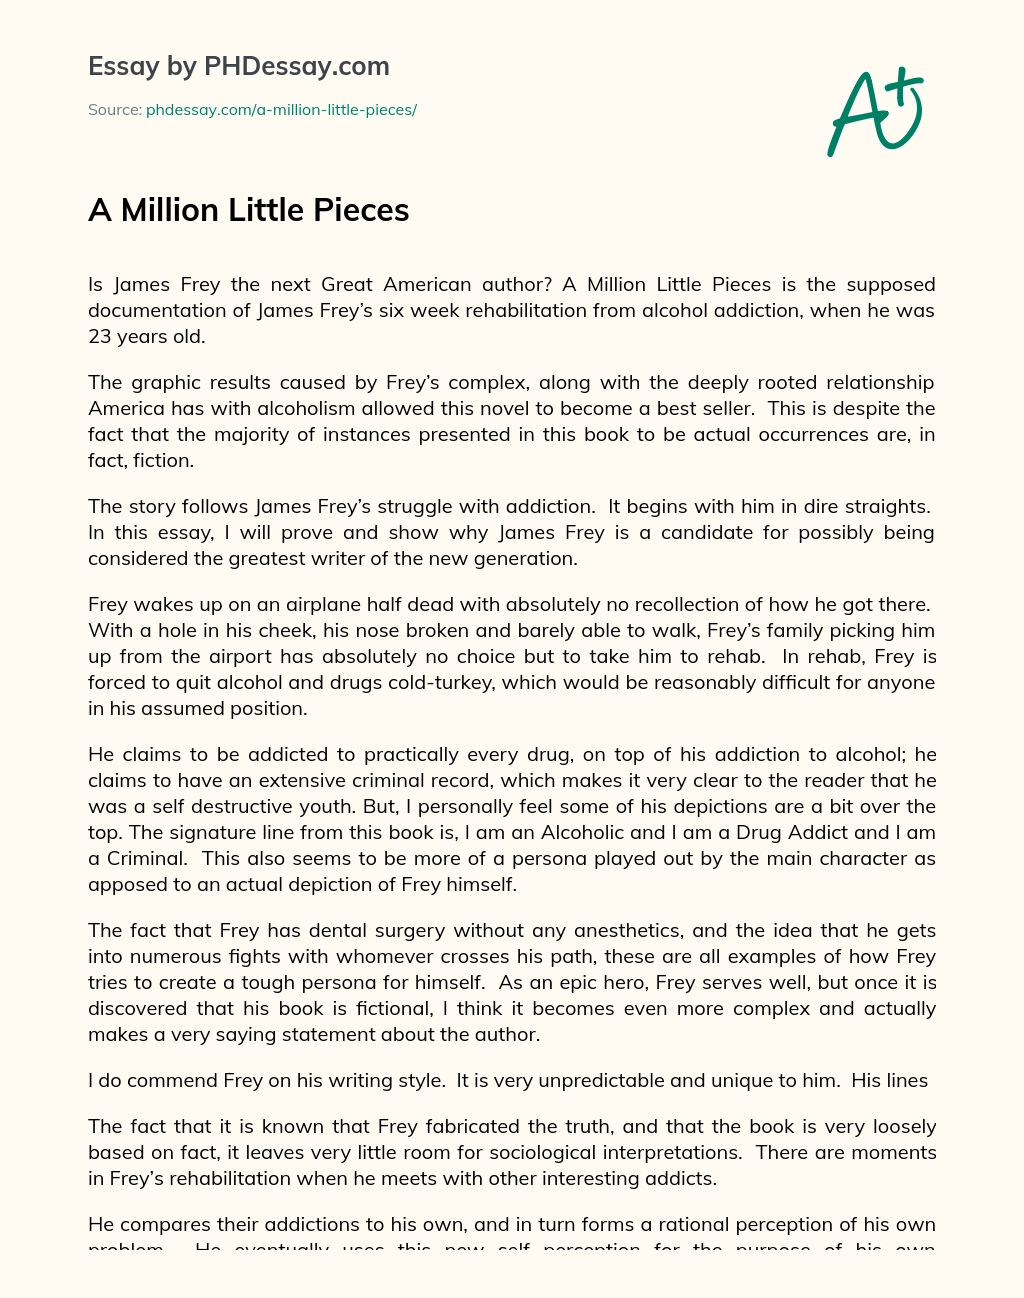 A Million Little Pieces essay